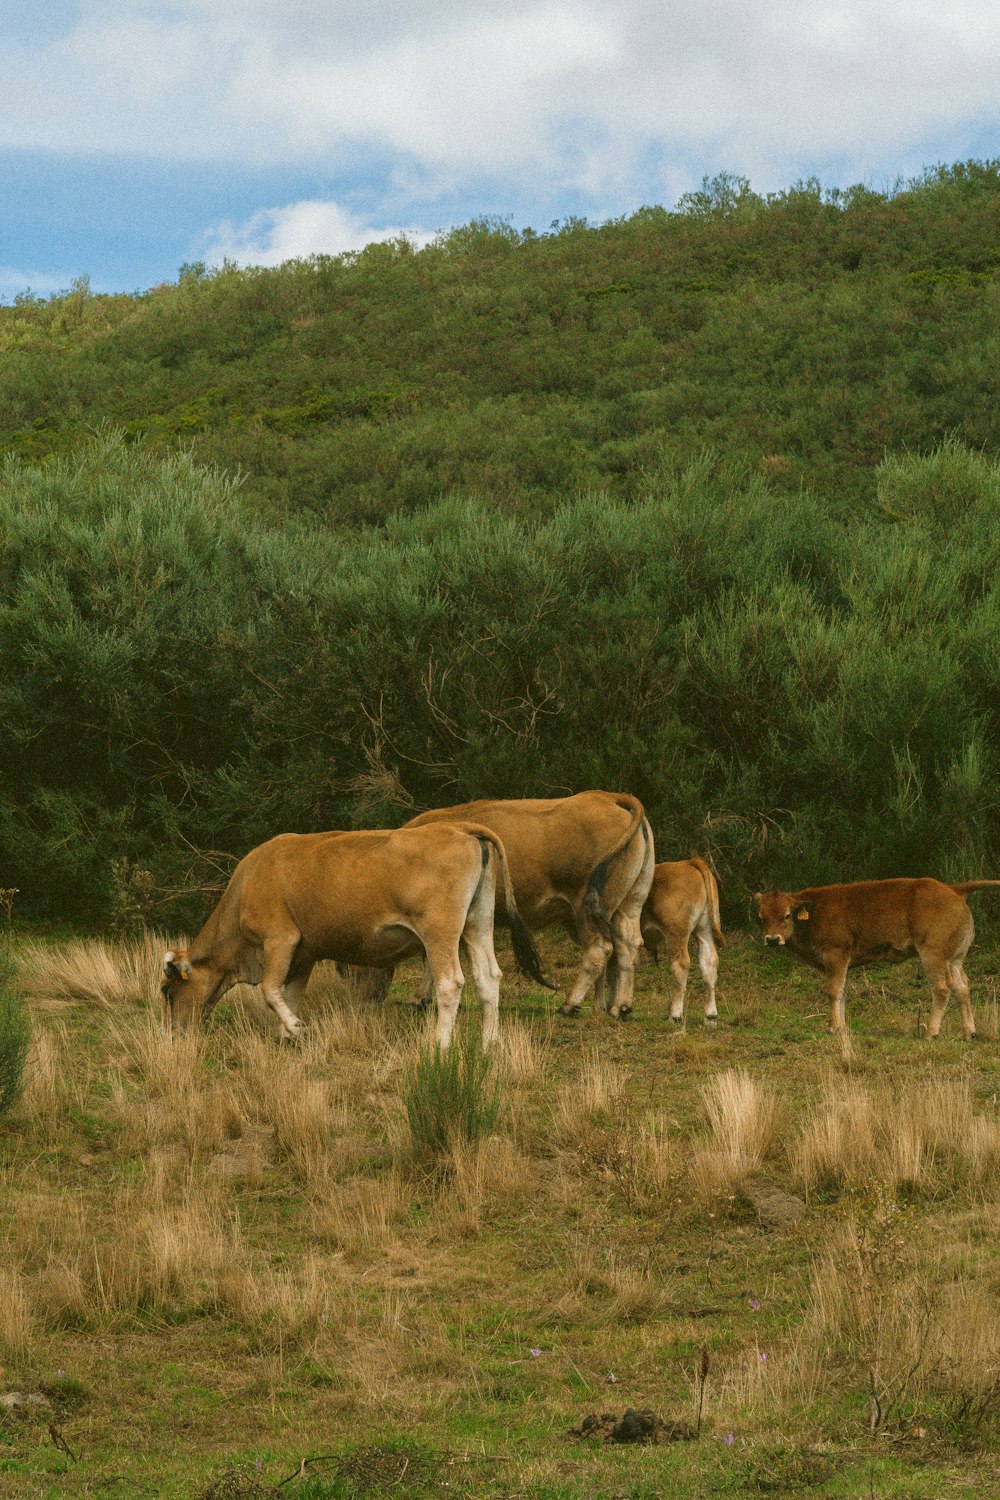 Una manada de ganado pastando en una exuberante ladera verde